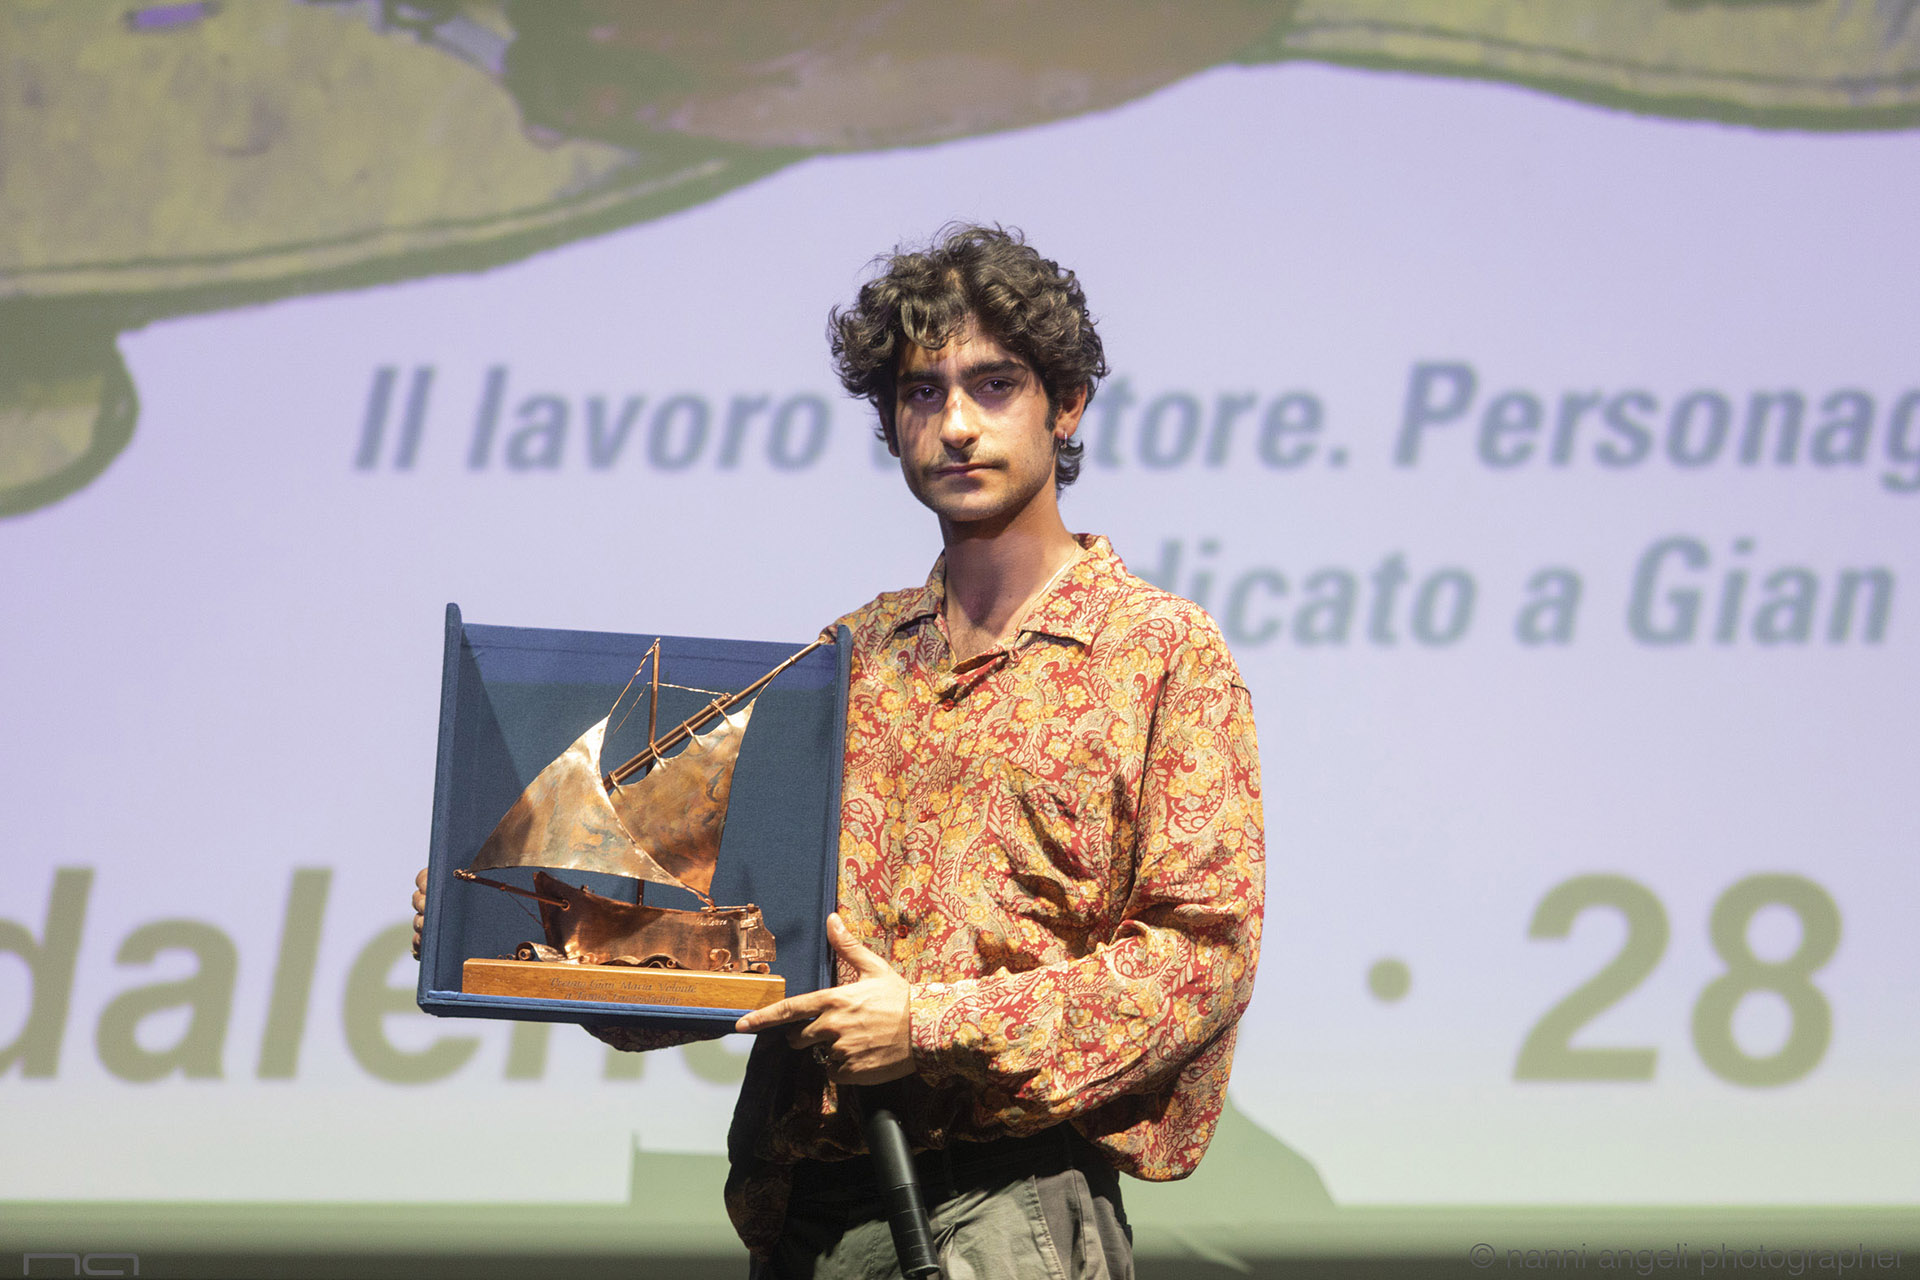 Premio Volonté 2019 a Ennio Fantastichini nelle mani di Lorenzo Fantastichini - foto di Nanni Angeli